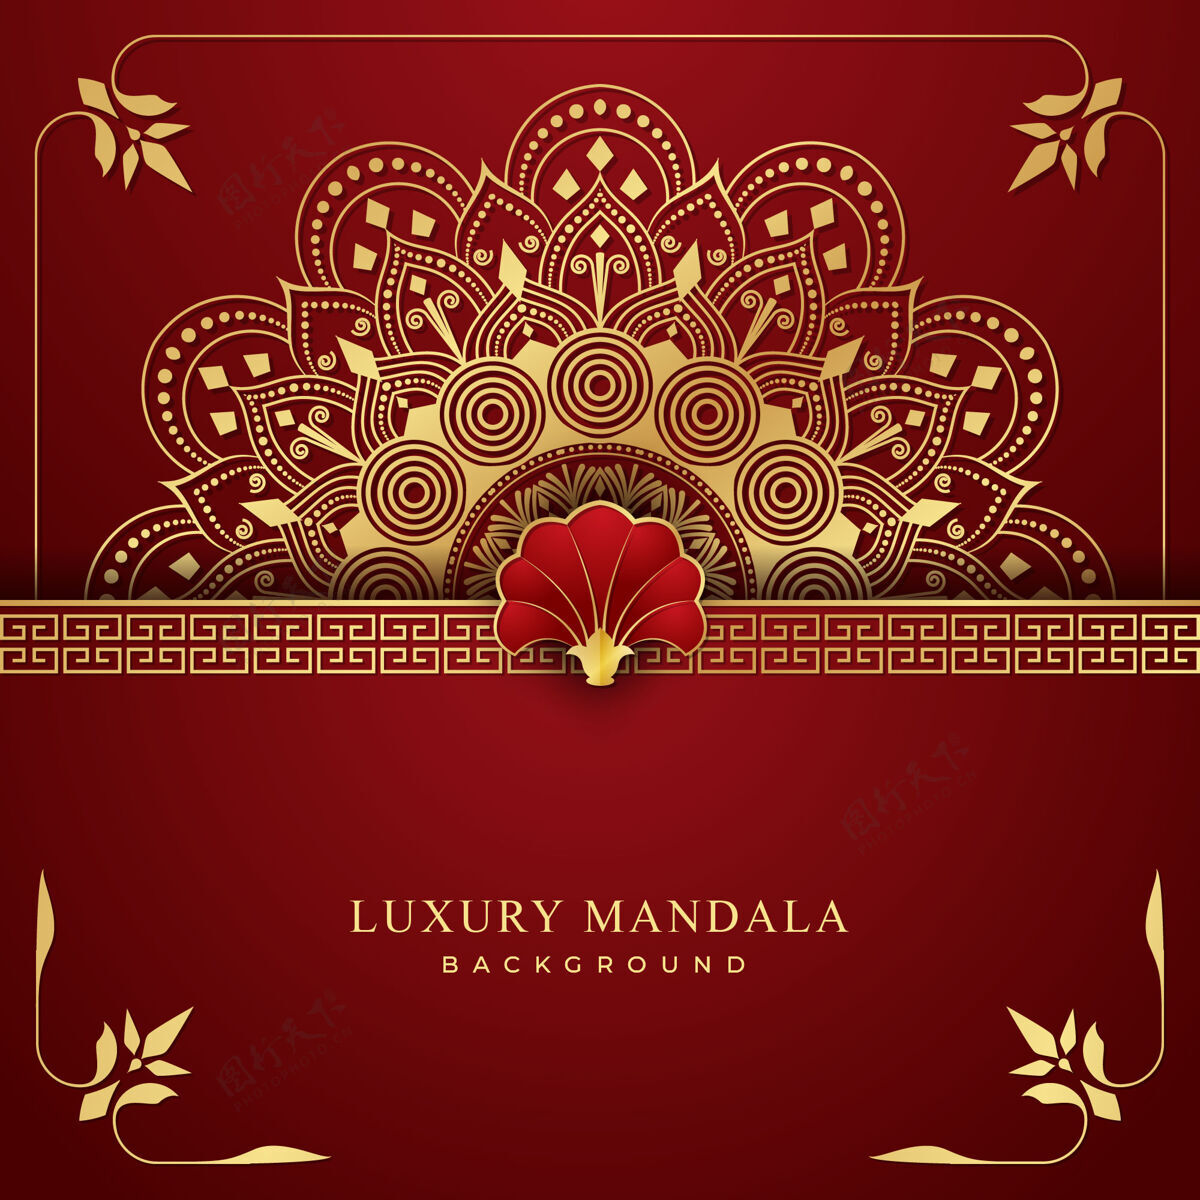 伊斯兰豪华曼荼罗背景与金色和红色组合蔓藤花纹装饰豪华背景